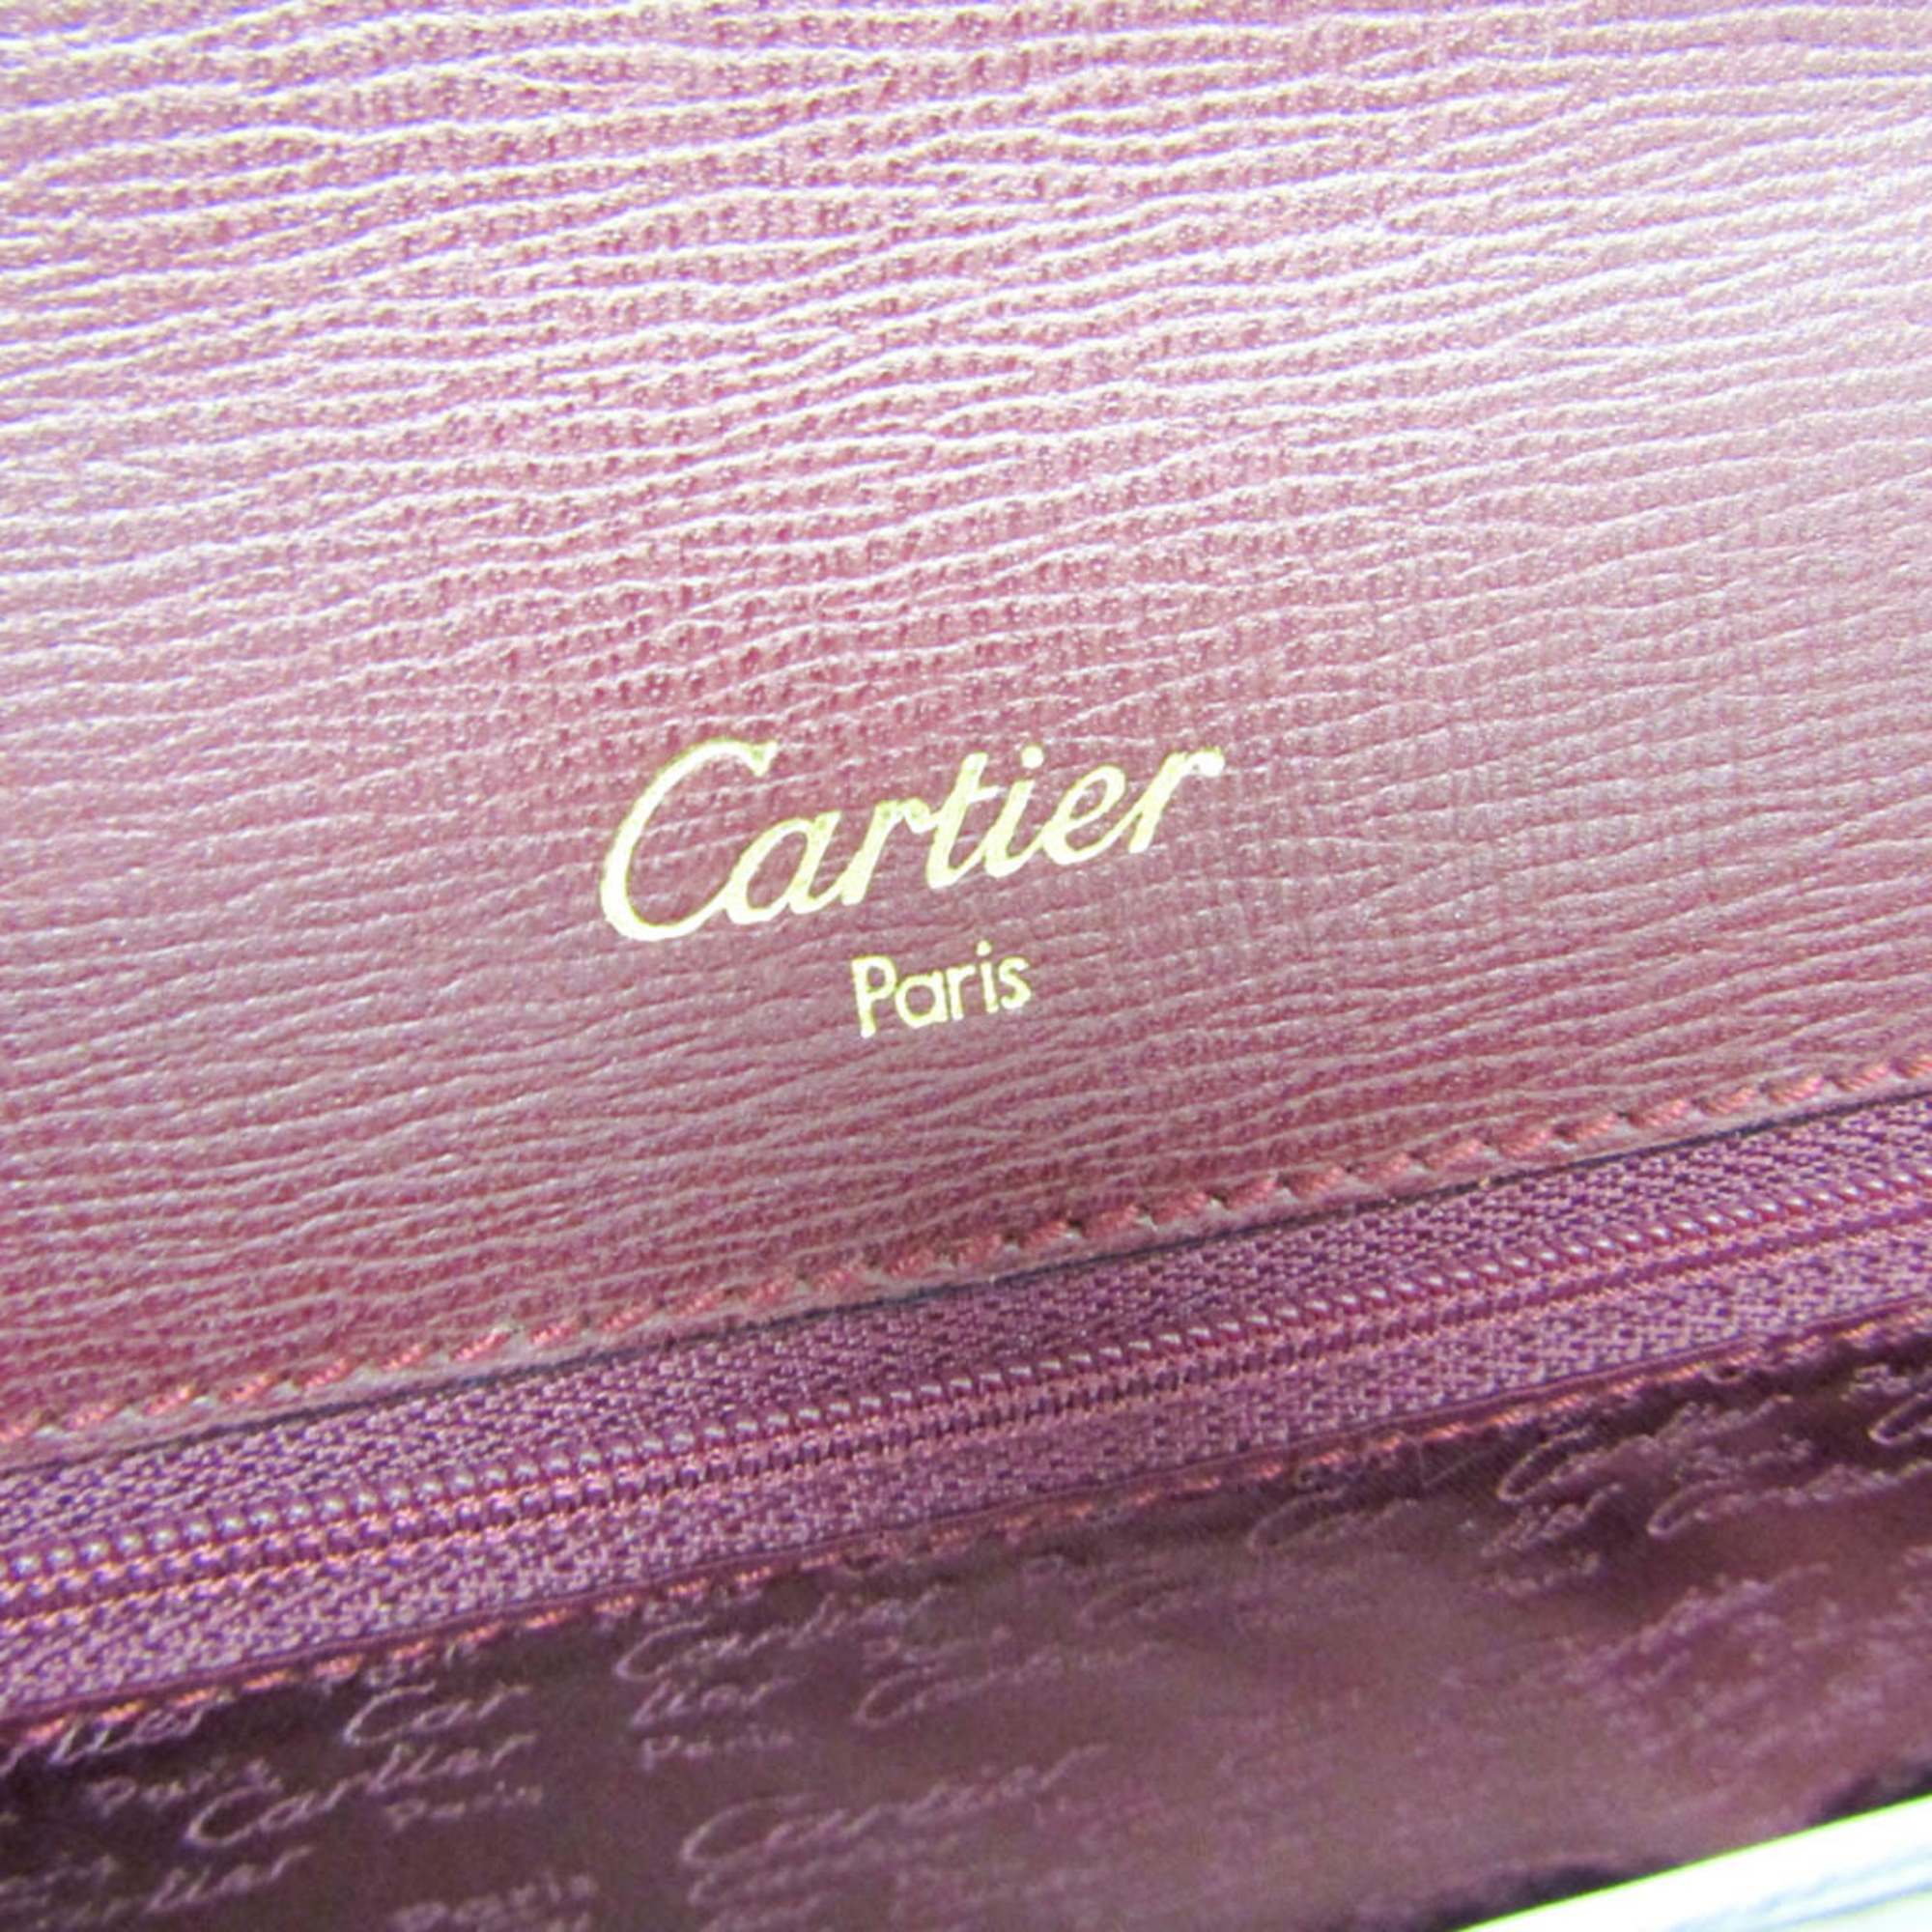 カルティエ(Cartier) マスト マストドゥ ターンロック レディース レザー ハンドバッグ ボルドー